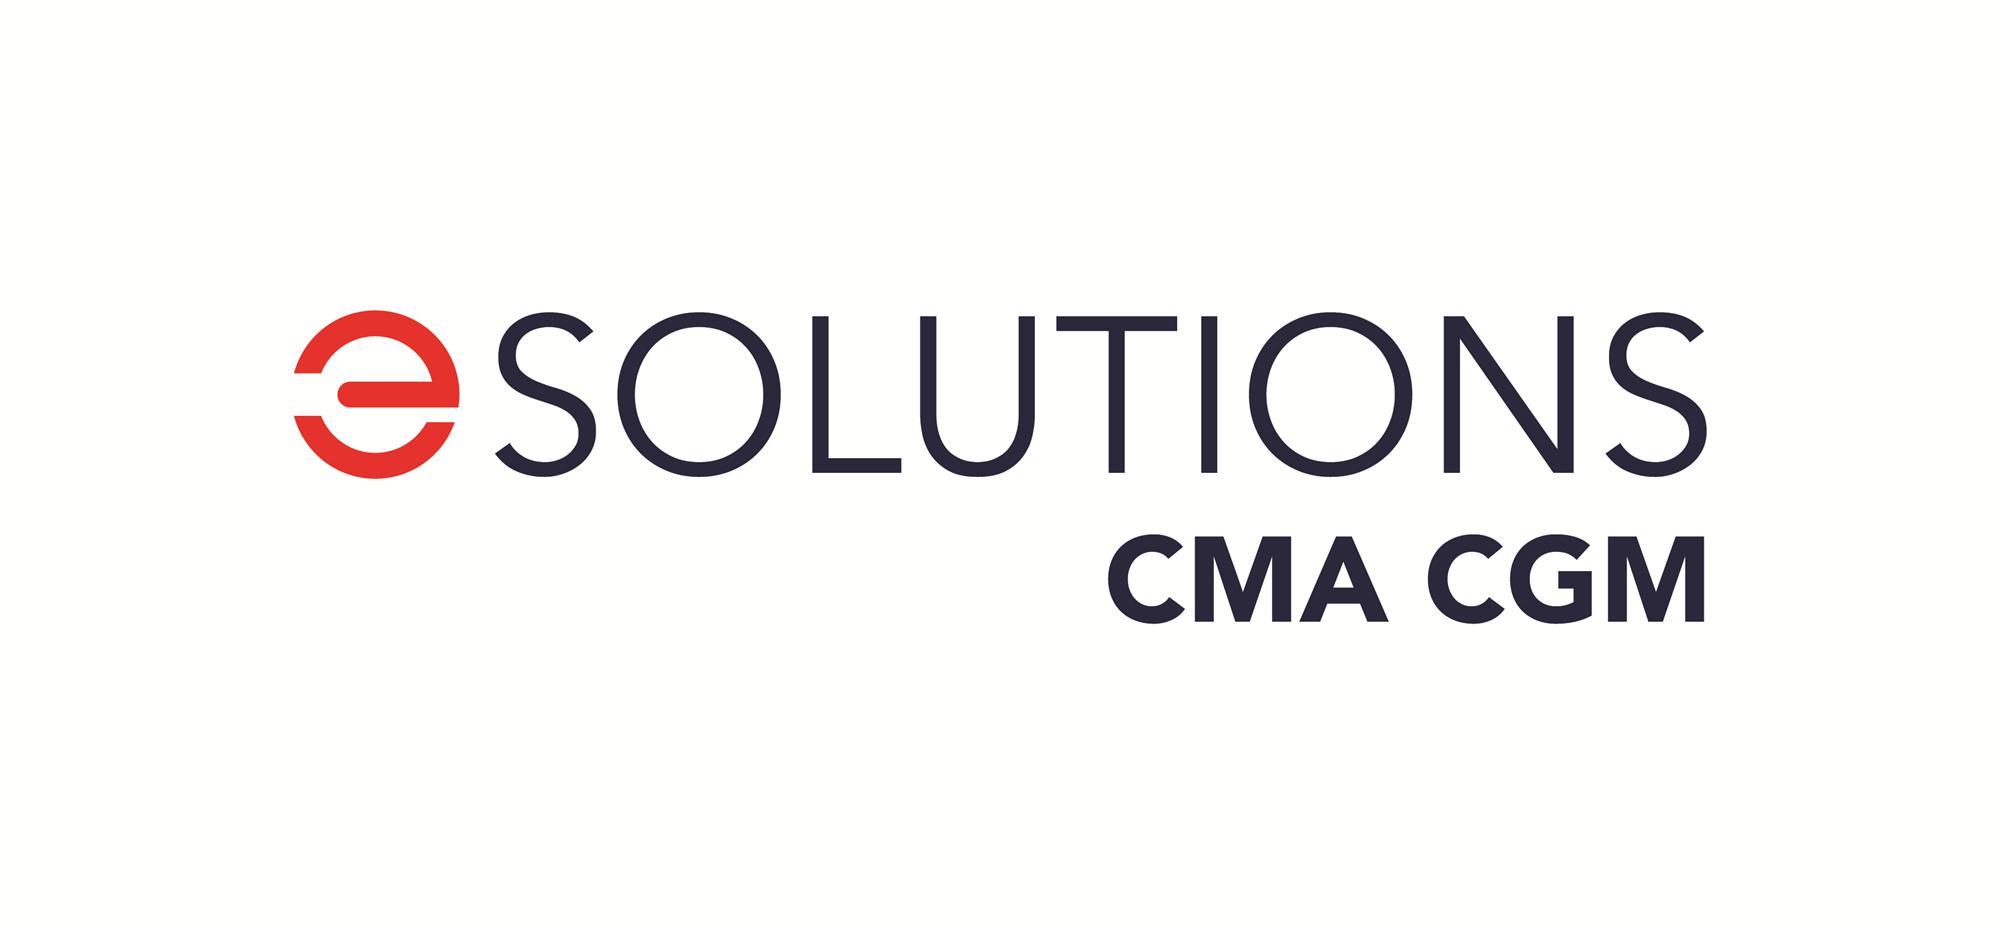 Self Photos / Files - CMA CGM e Solutions